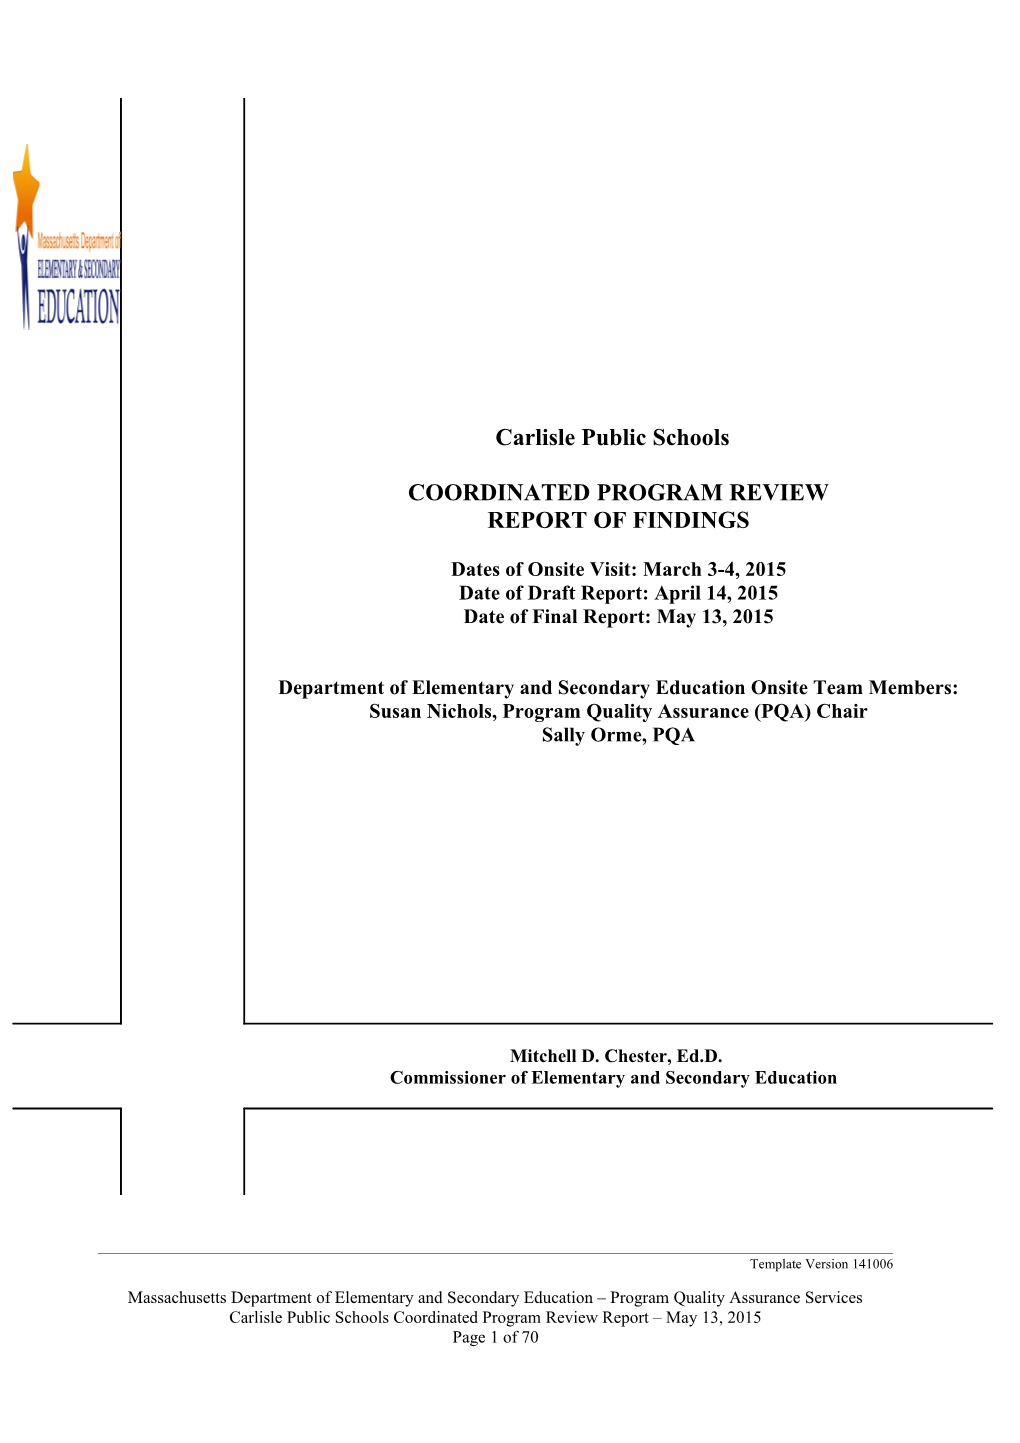 Carlisle Public Schools CPR Final Report 2015